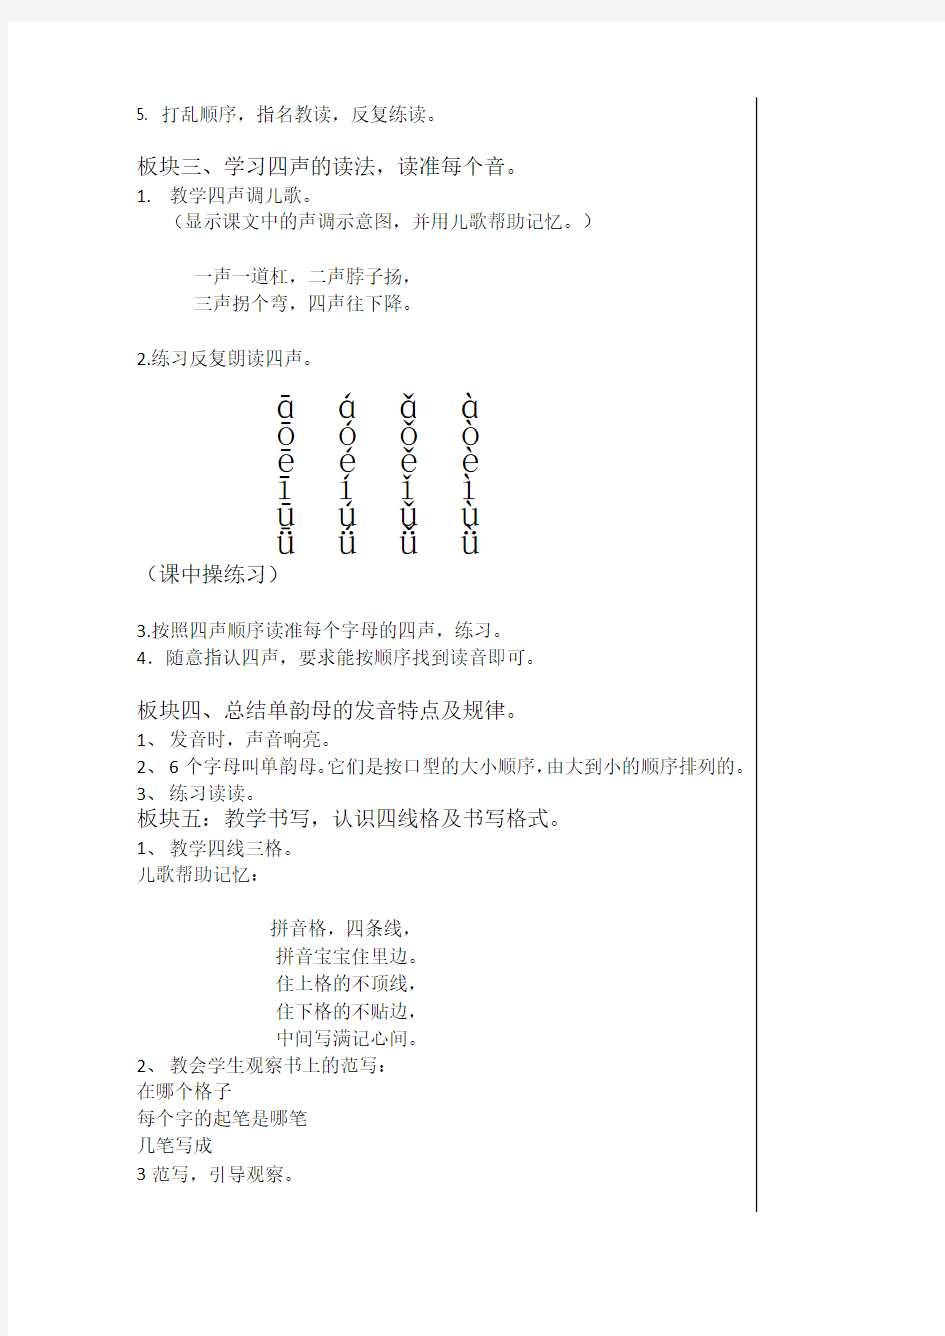 汉语拼音单韵母及四声教学